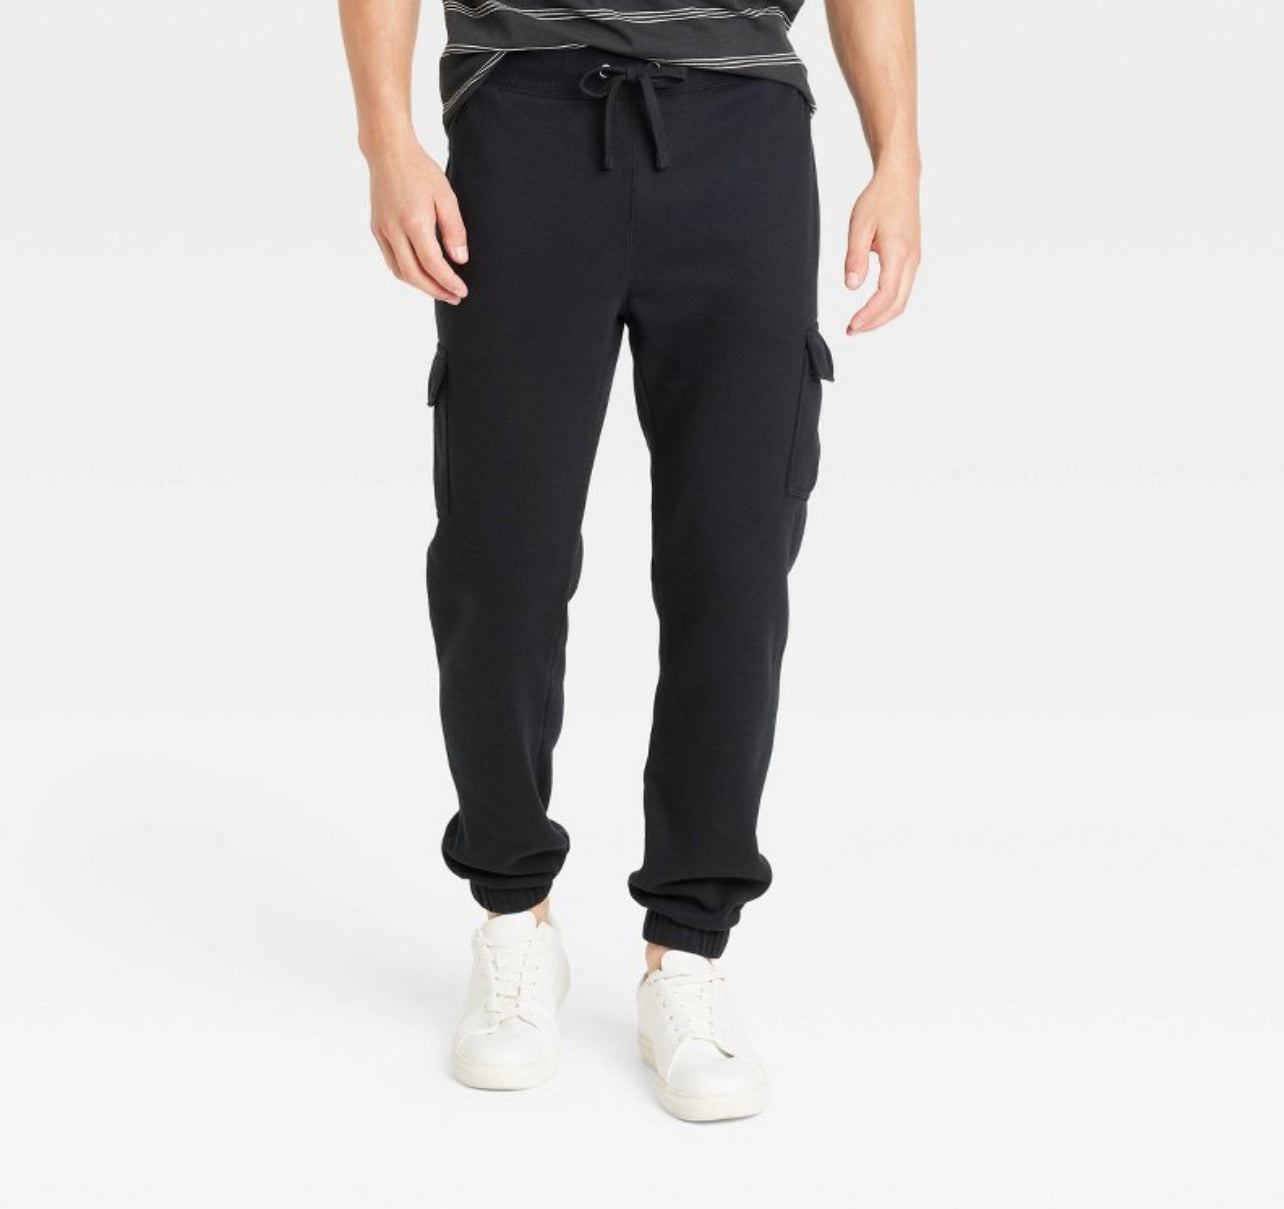 Men's Cotton Modal Knit Pajama Pants - Goodfellow & Co™ Black S